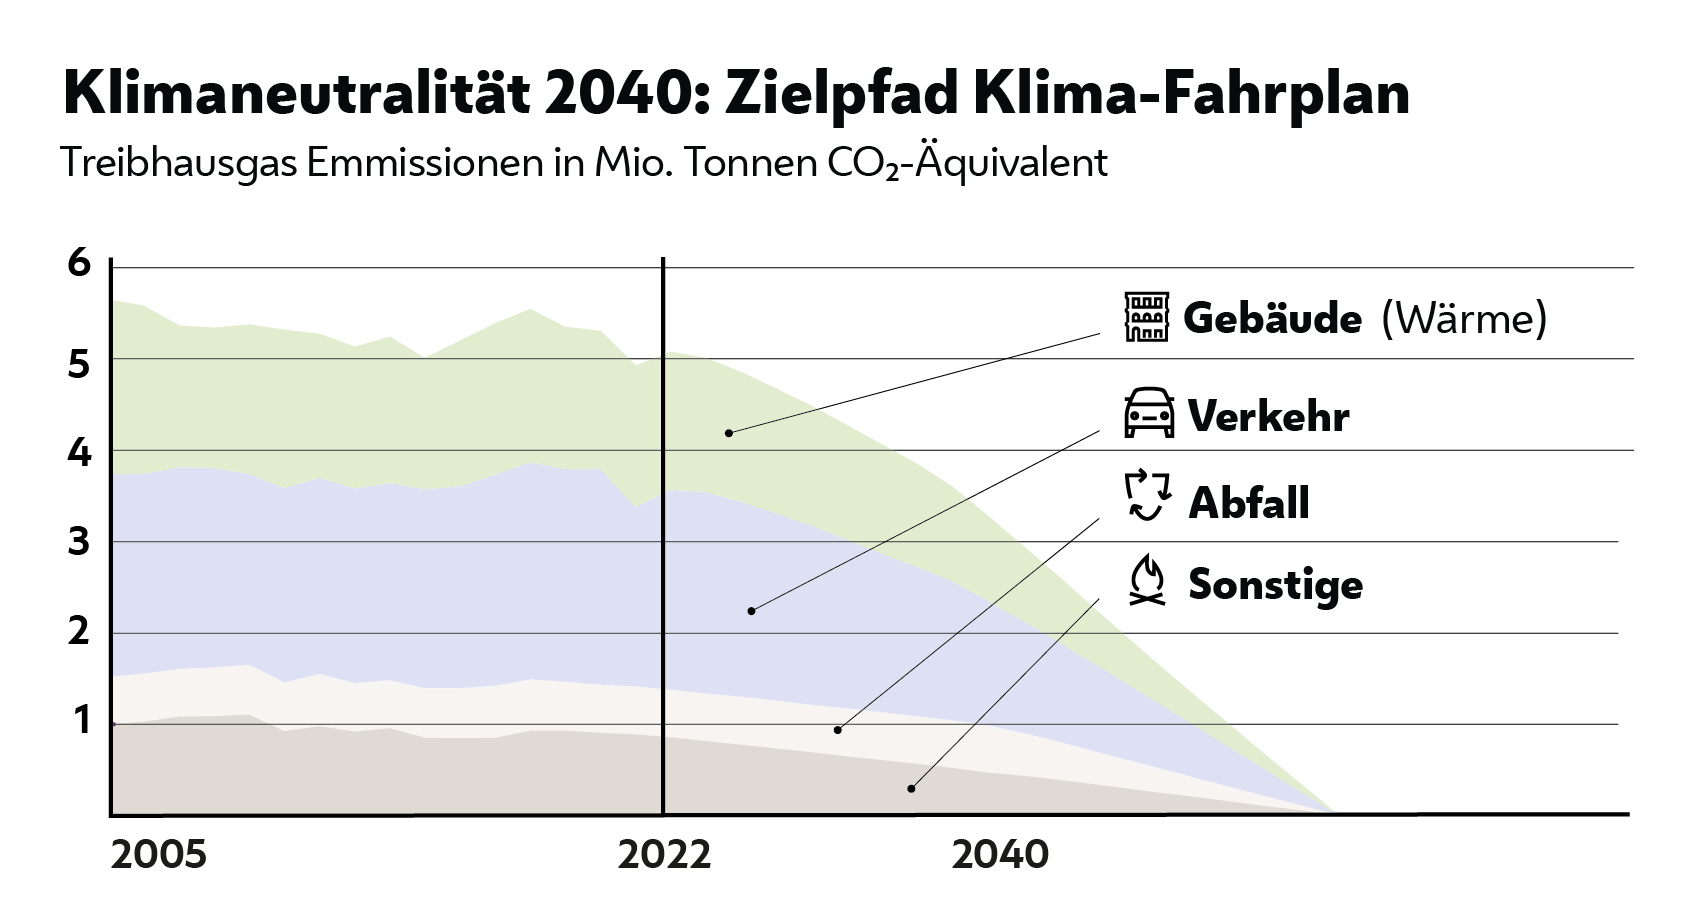 Die Ziele des Klima-Fahrplans 2040